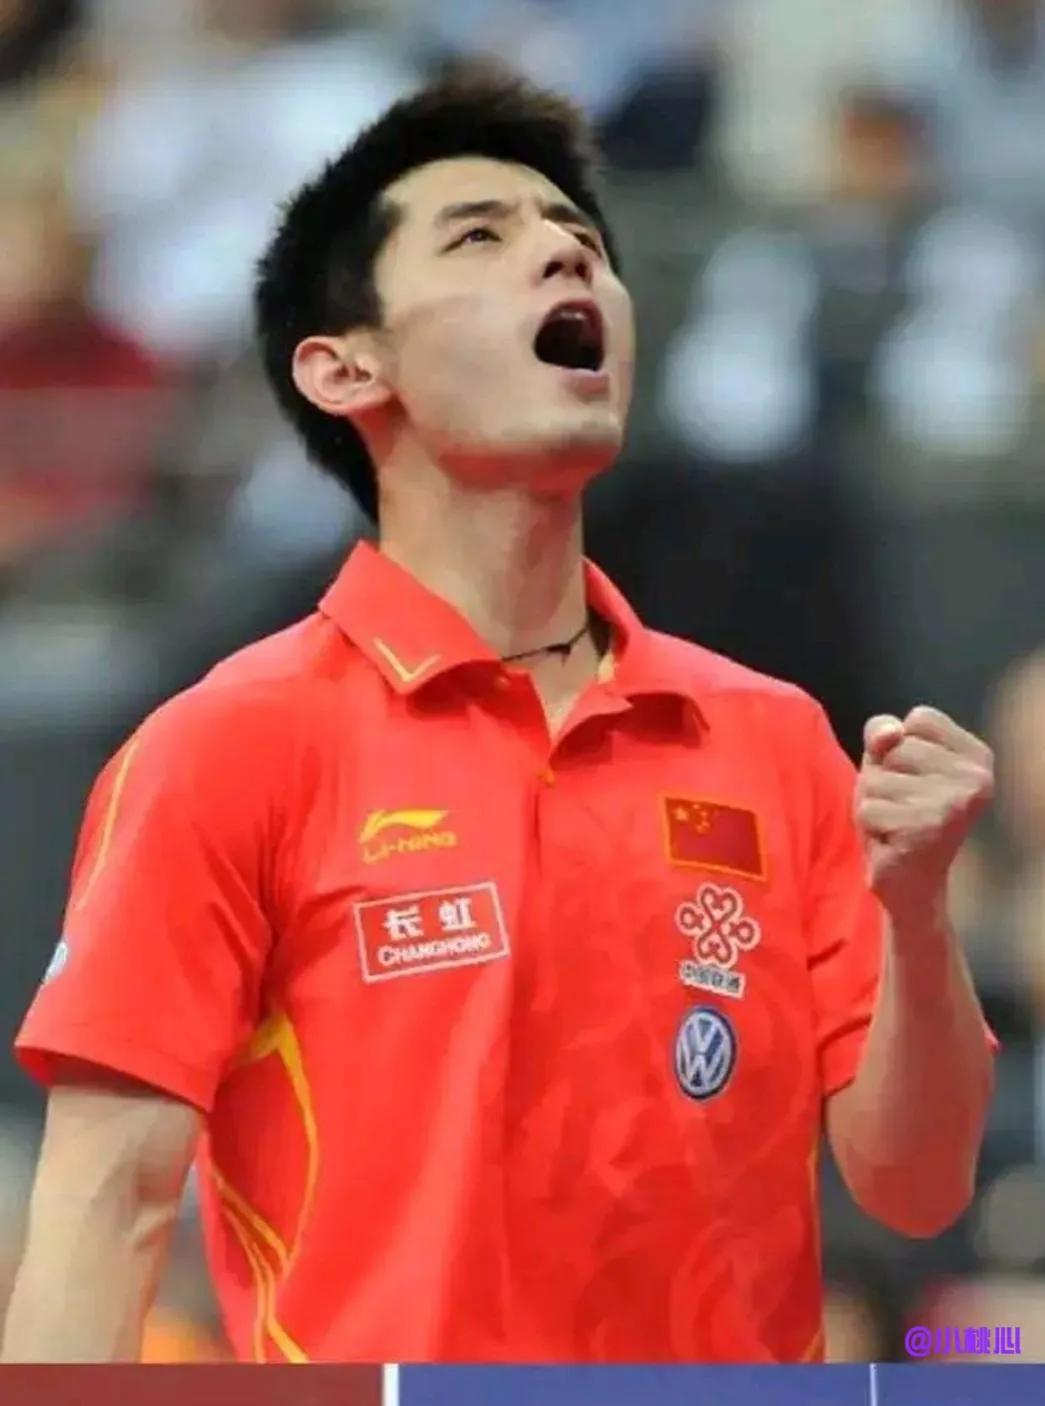 

非常非常的震惊，他是中国男子乒乓球史上第三位大满贯选手，也是乒乓球史上第七位(1)